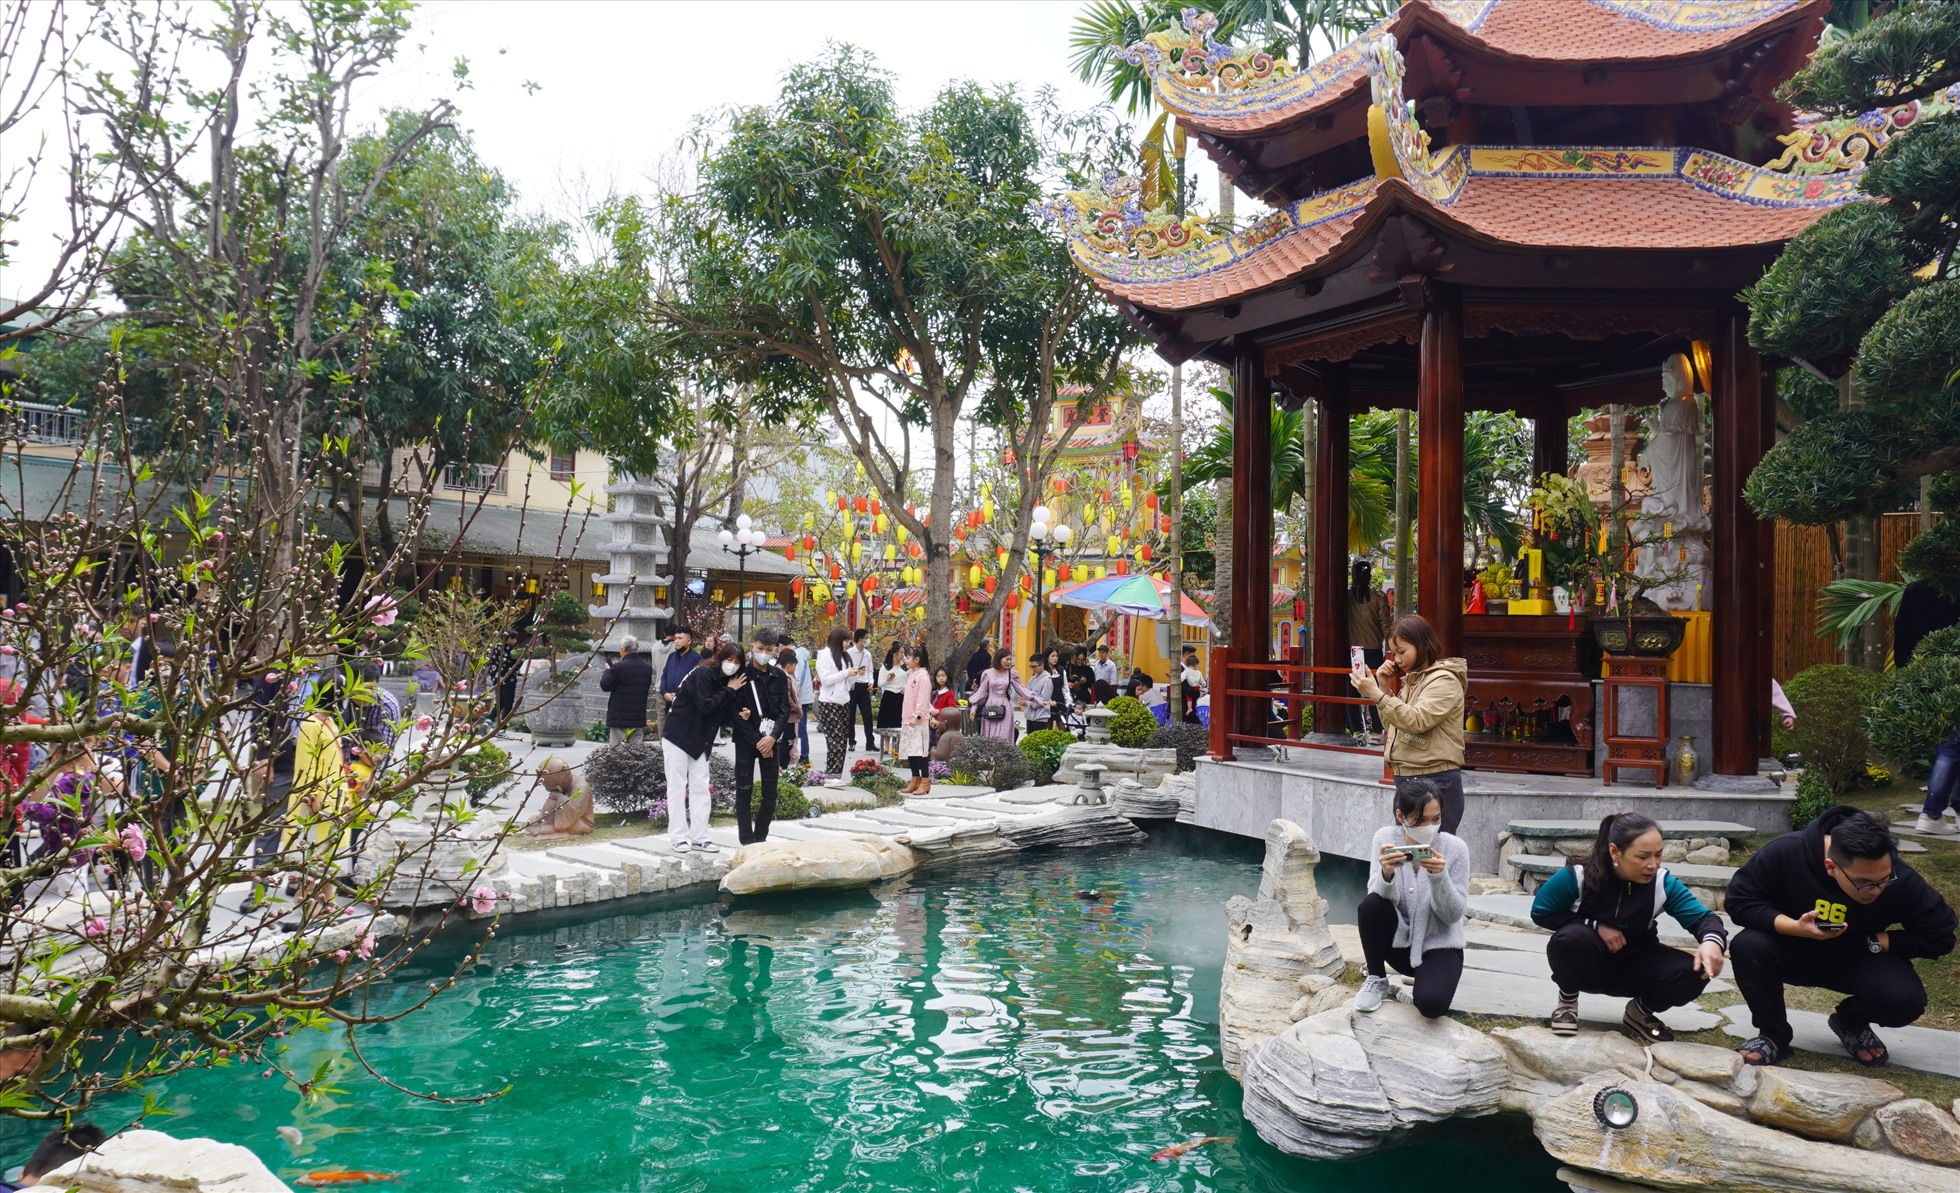 Du khách vãn cảnh xung quanh bể cá trong khuôn viên nhà chùa. Ảnh: Quách Du